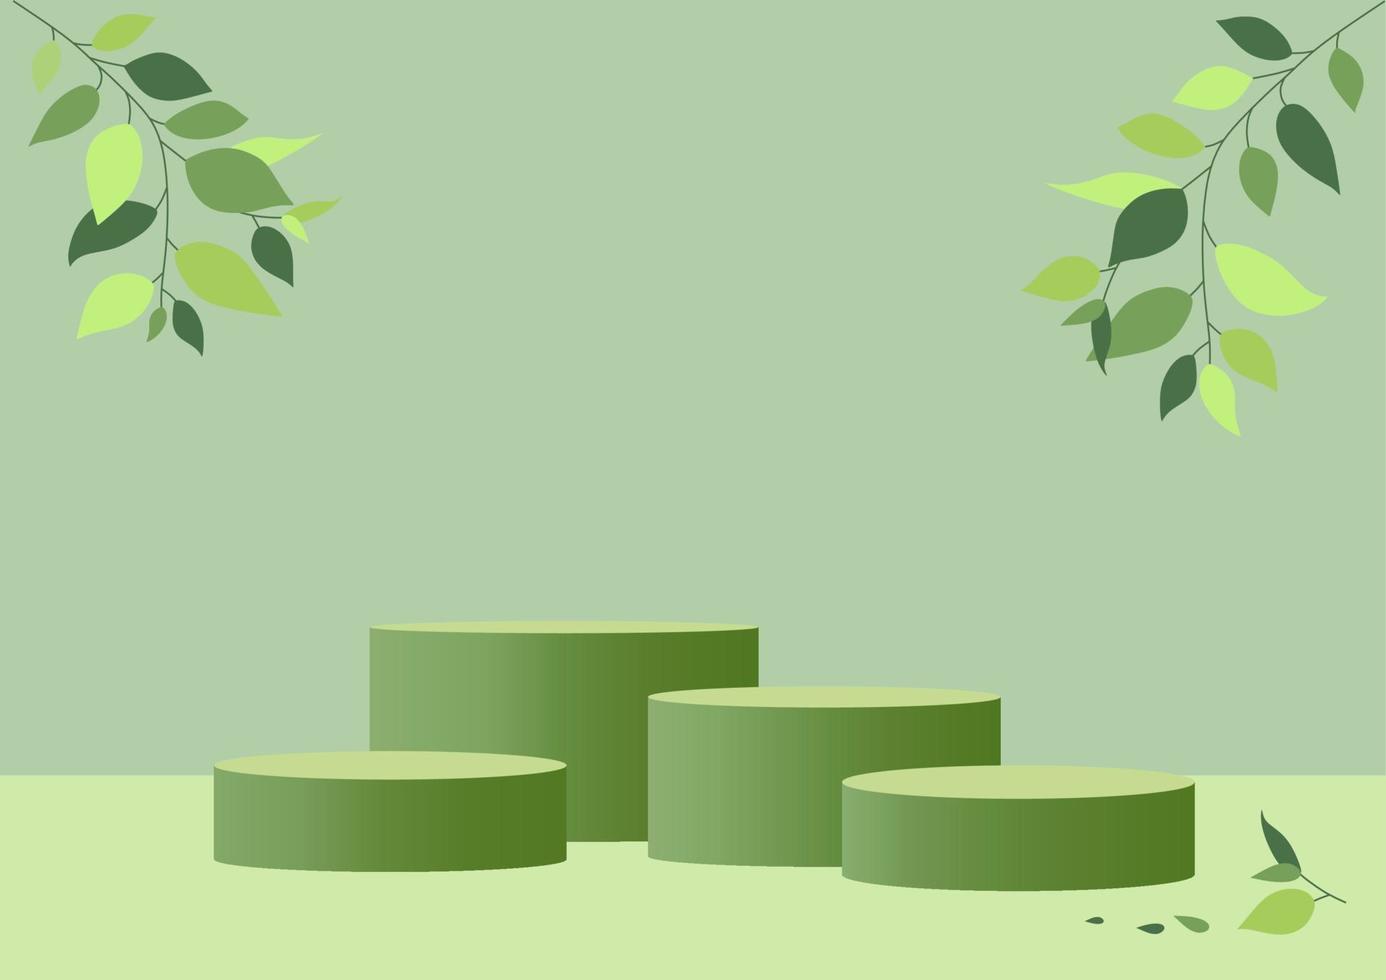 scène minimale abstraite avec quatre formes géométriques. podiums cylindriques sur fond vert avec des feuilles de plantes vertes. présentation de produit, produit d'exposition, podium, socle de scène, plate-forme. maquette de vecteur 3d.